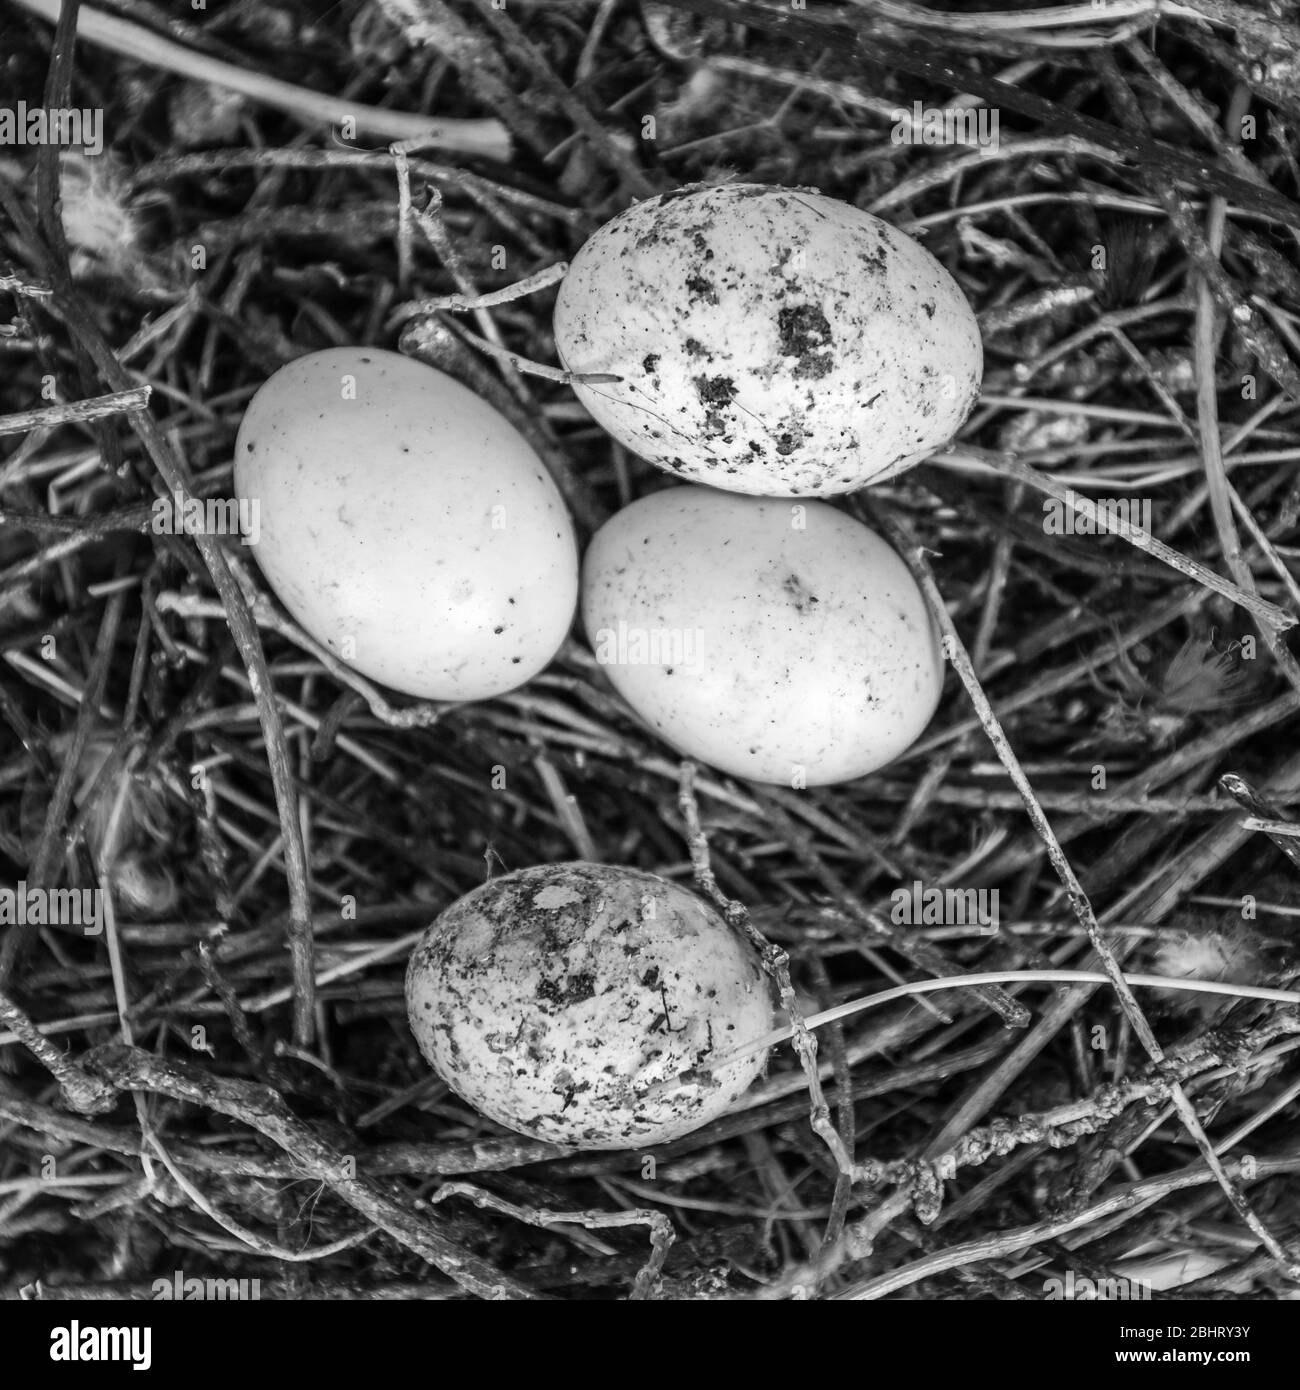 Immagine in bianco e nero di uova di piccione abbandonate in un nido. Foto Stock